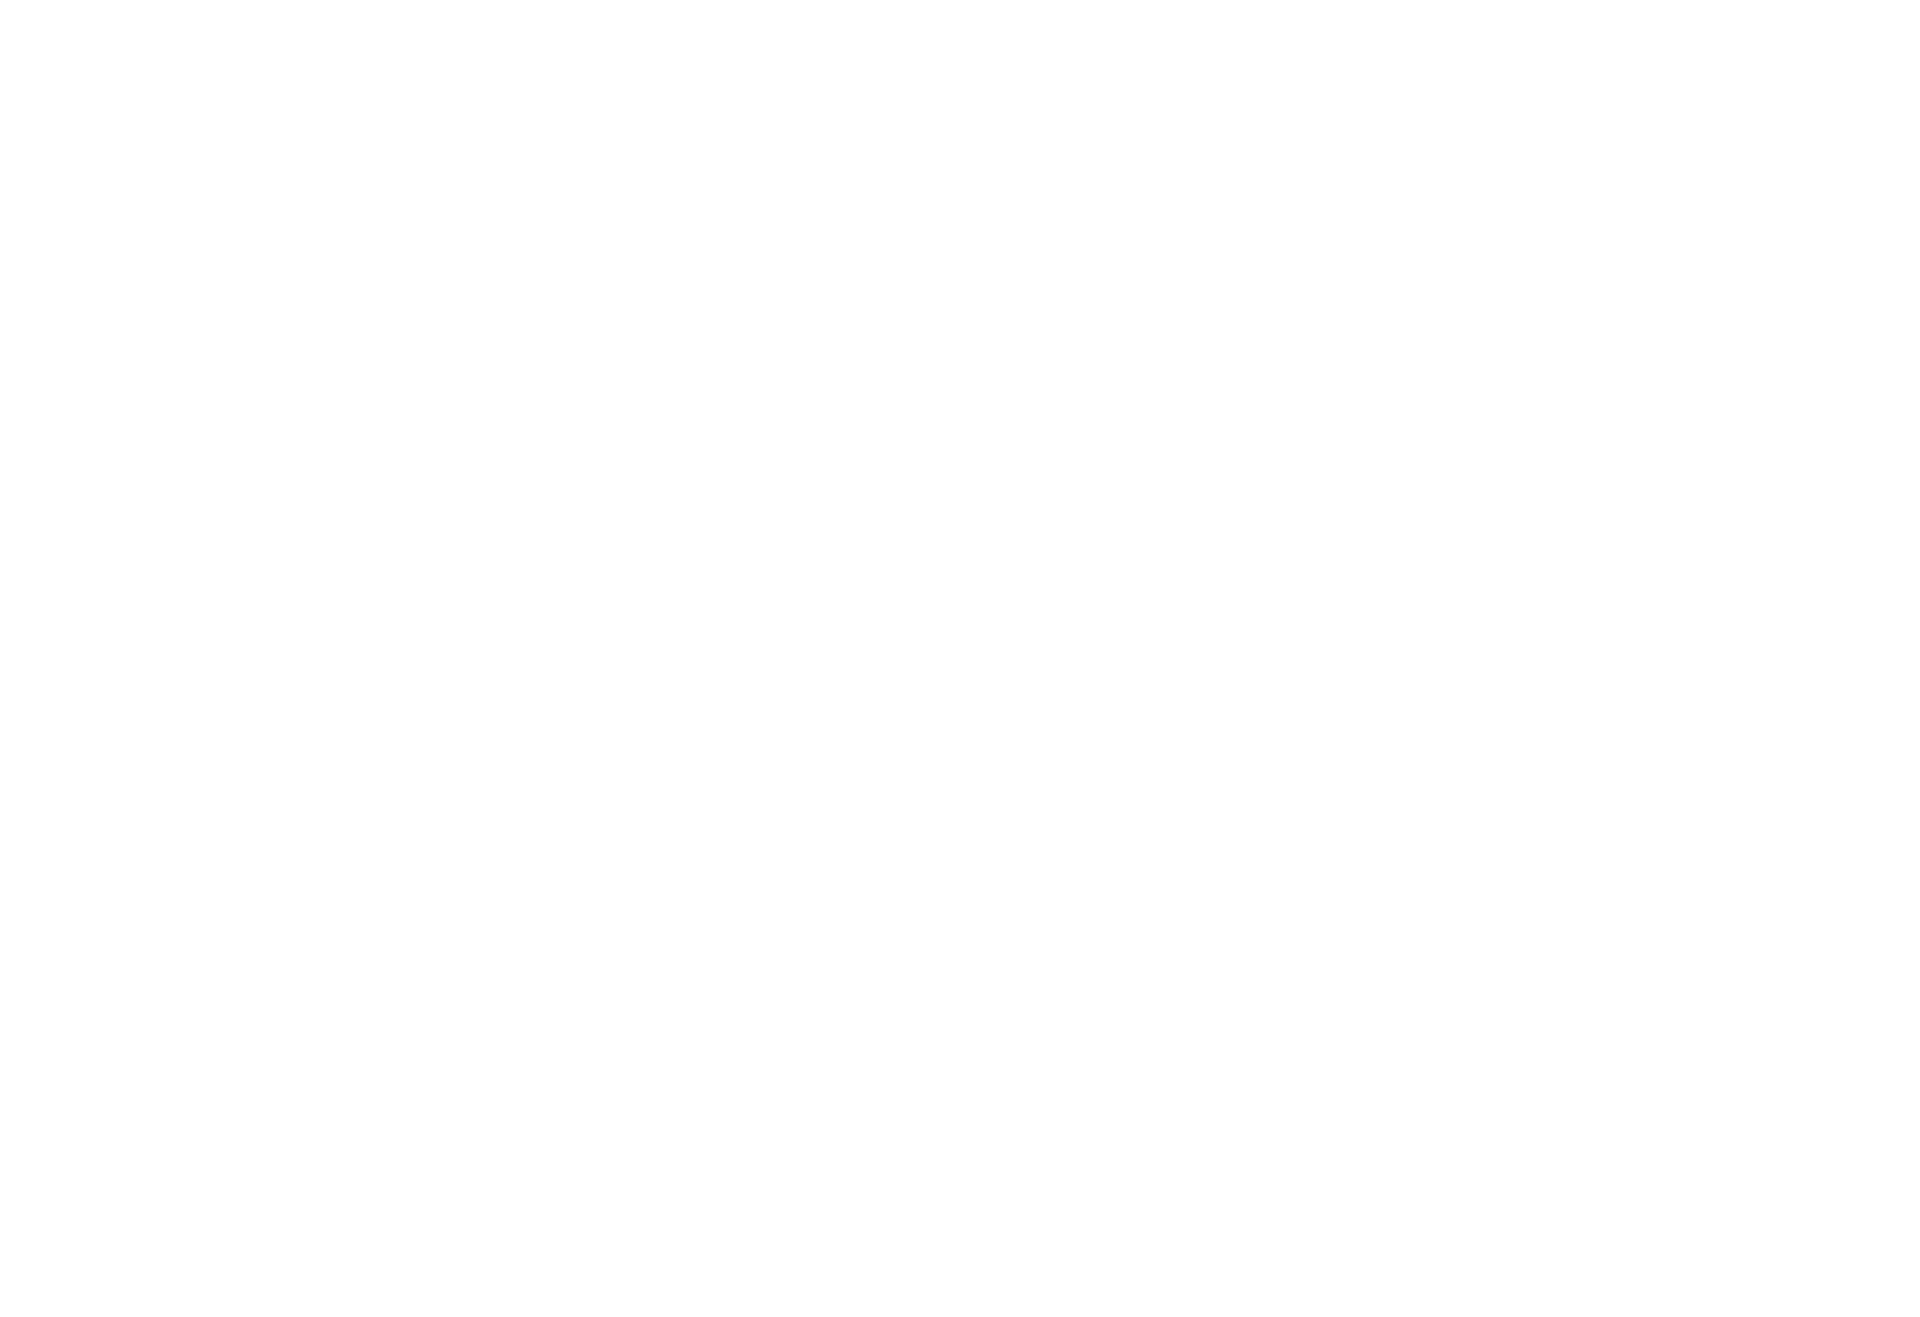 SOUND SIG